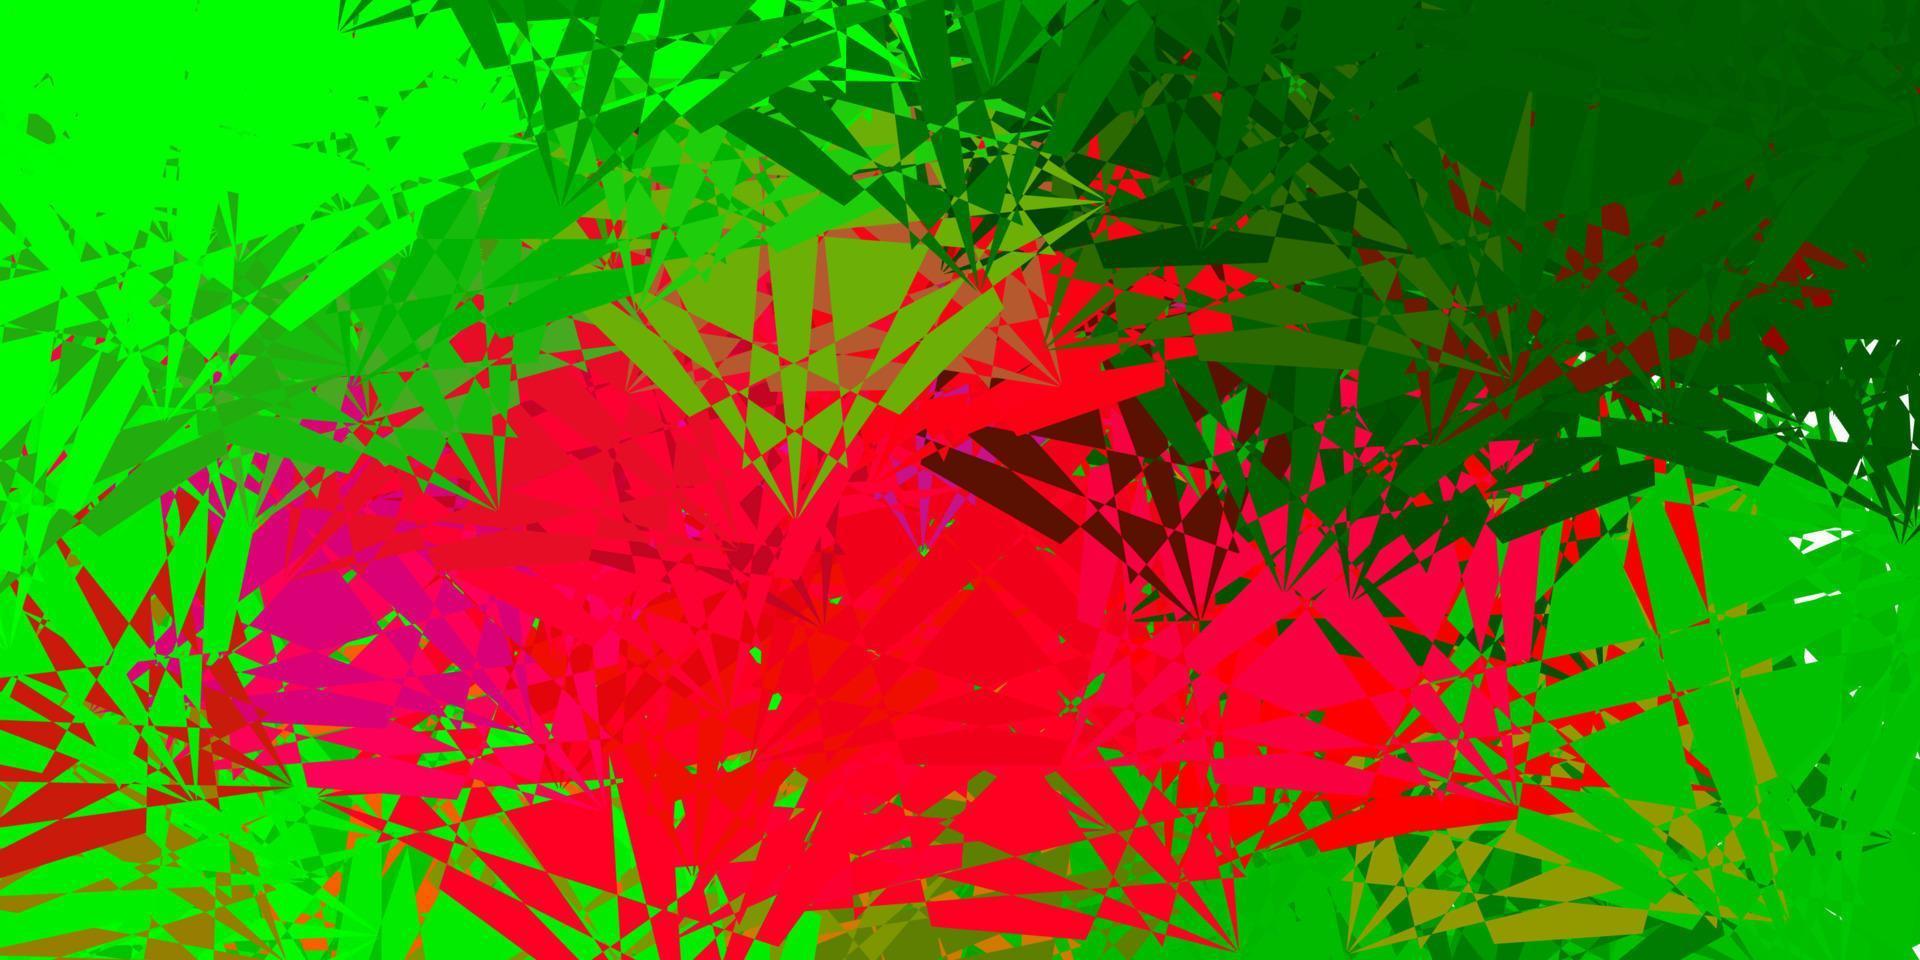 lichtroze, groen vectorpatroon met veelhoekige vormen. vector